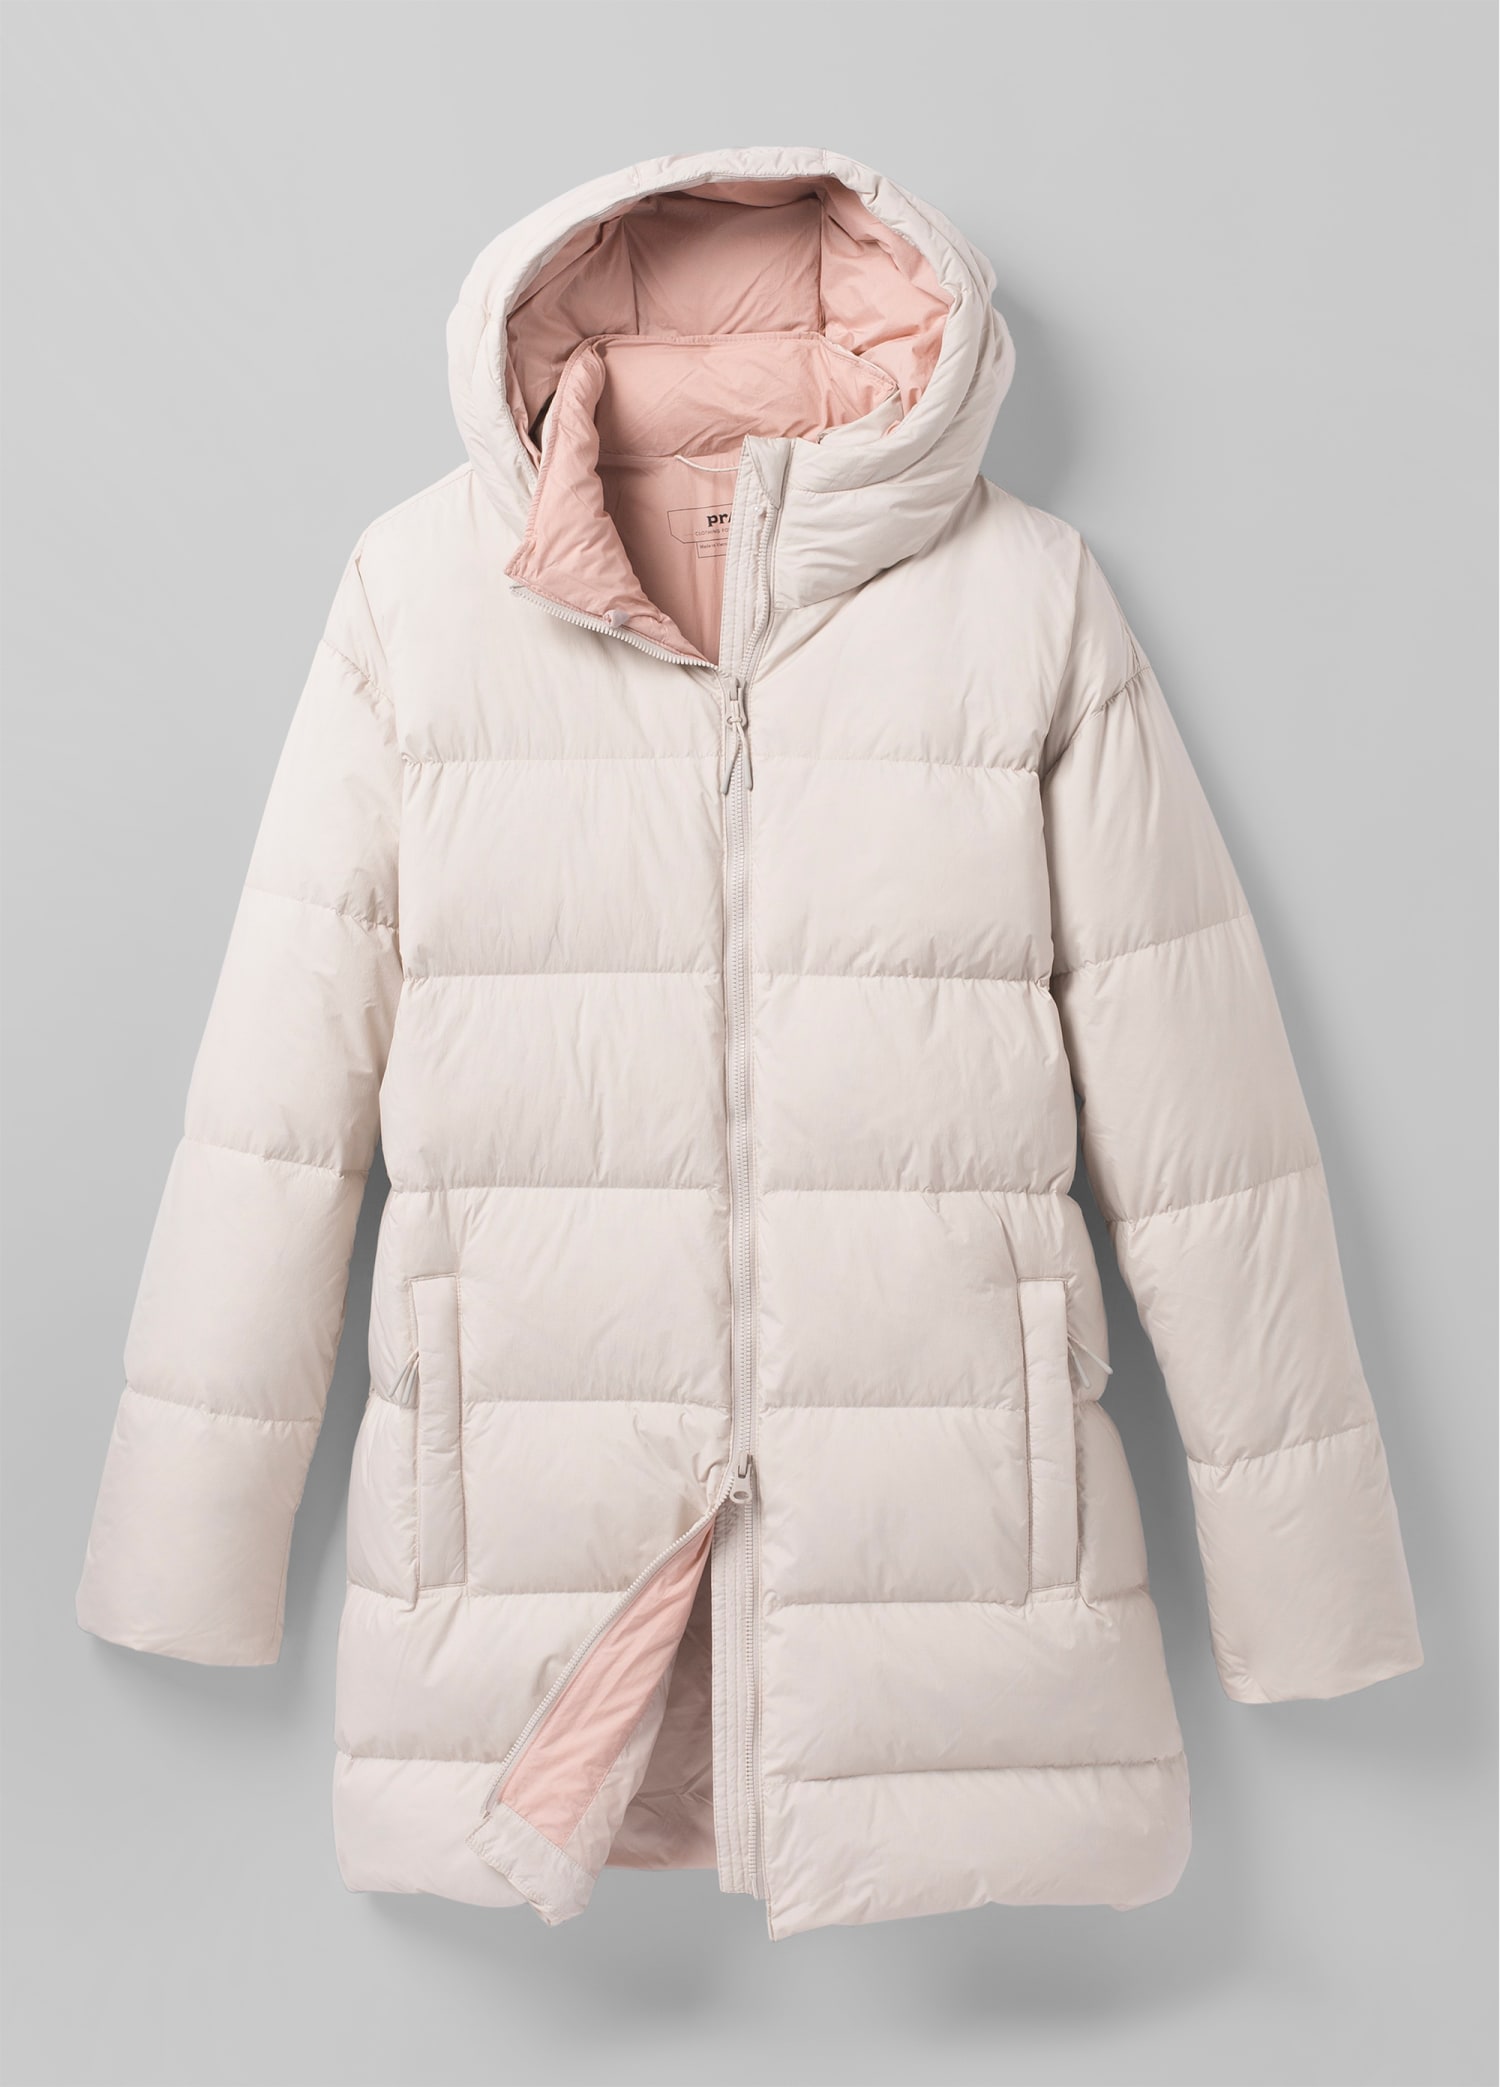 Women/'s Winter Slim Puffer Parka Duck Down Jacket Hooded Warm Stylish Long Coat